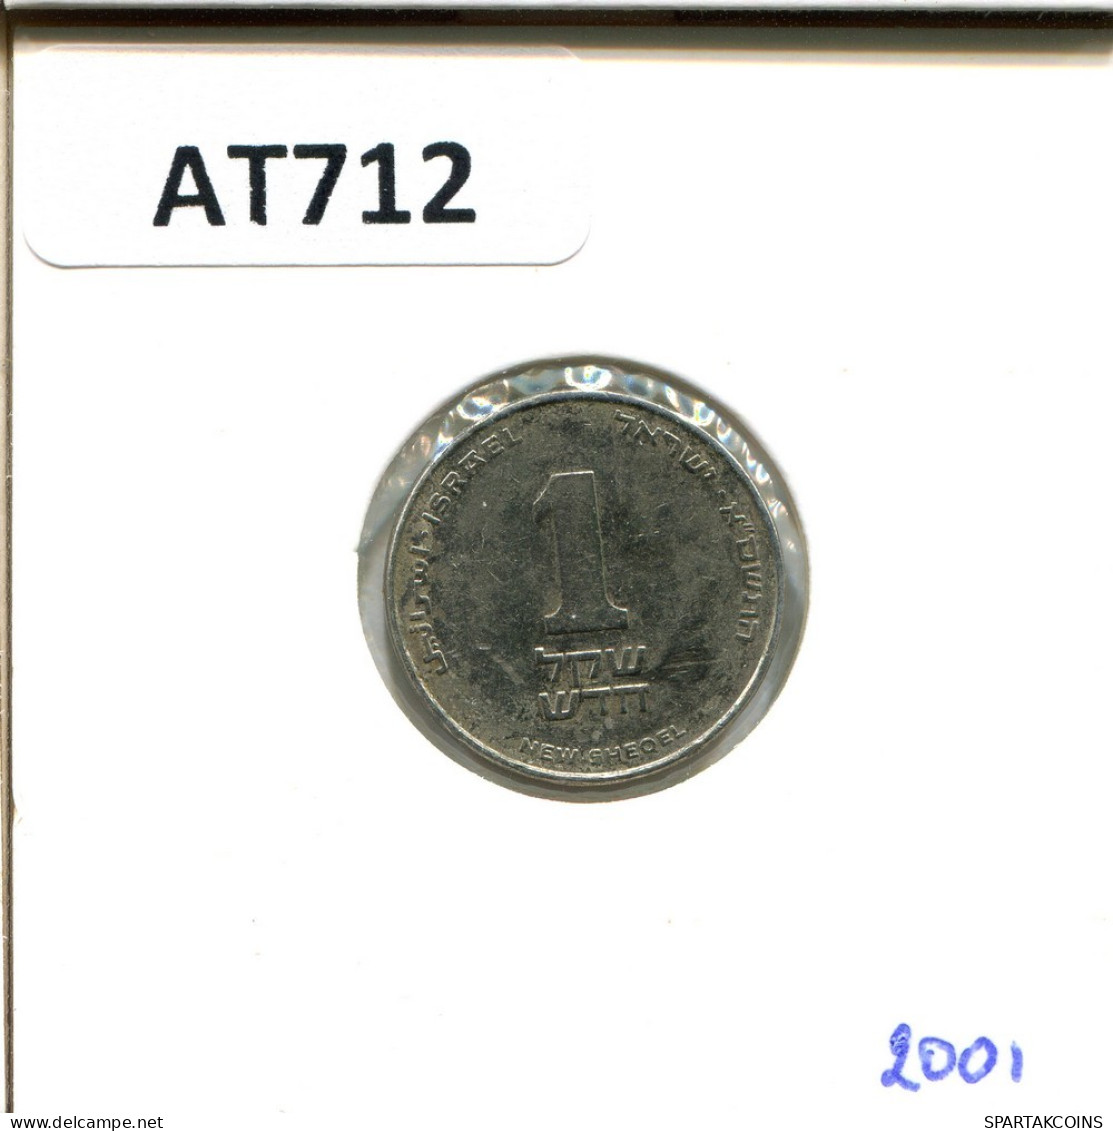 1 NEW SHEQEL 2001 ISRAEL Coin #AT712.U.A - Israel